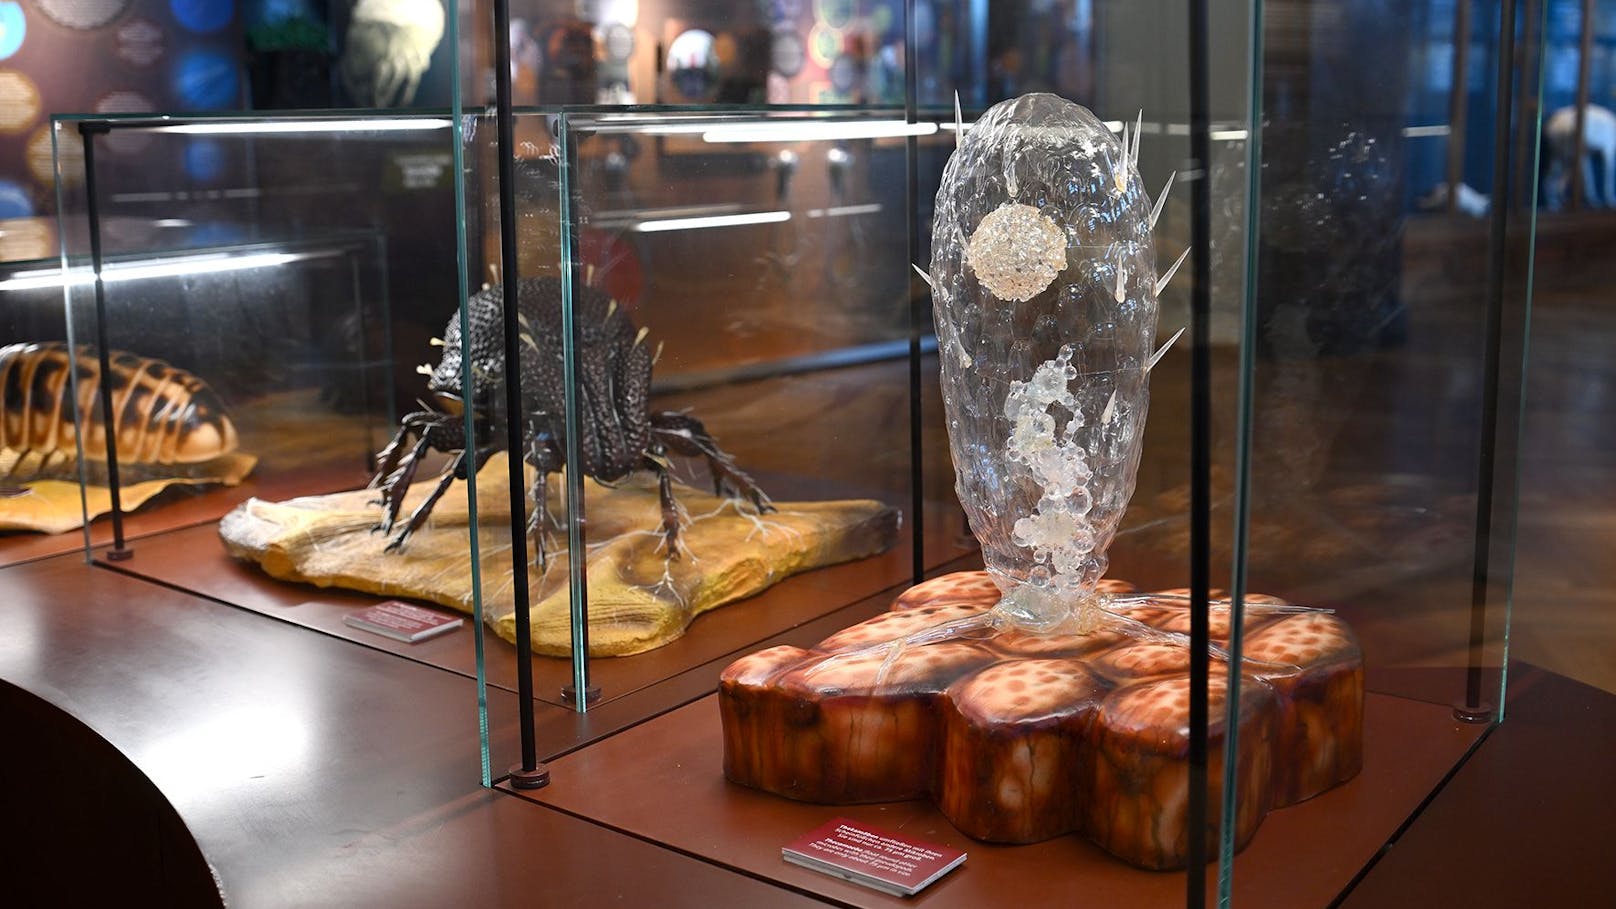 Kern der Ausstellung sind fantastische überlebensgroße Modelle von den verschiedenen Lebewesen.